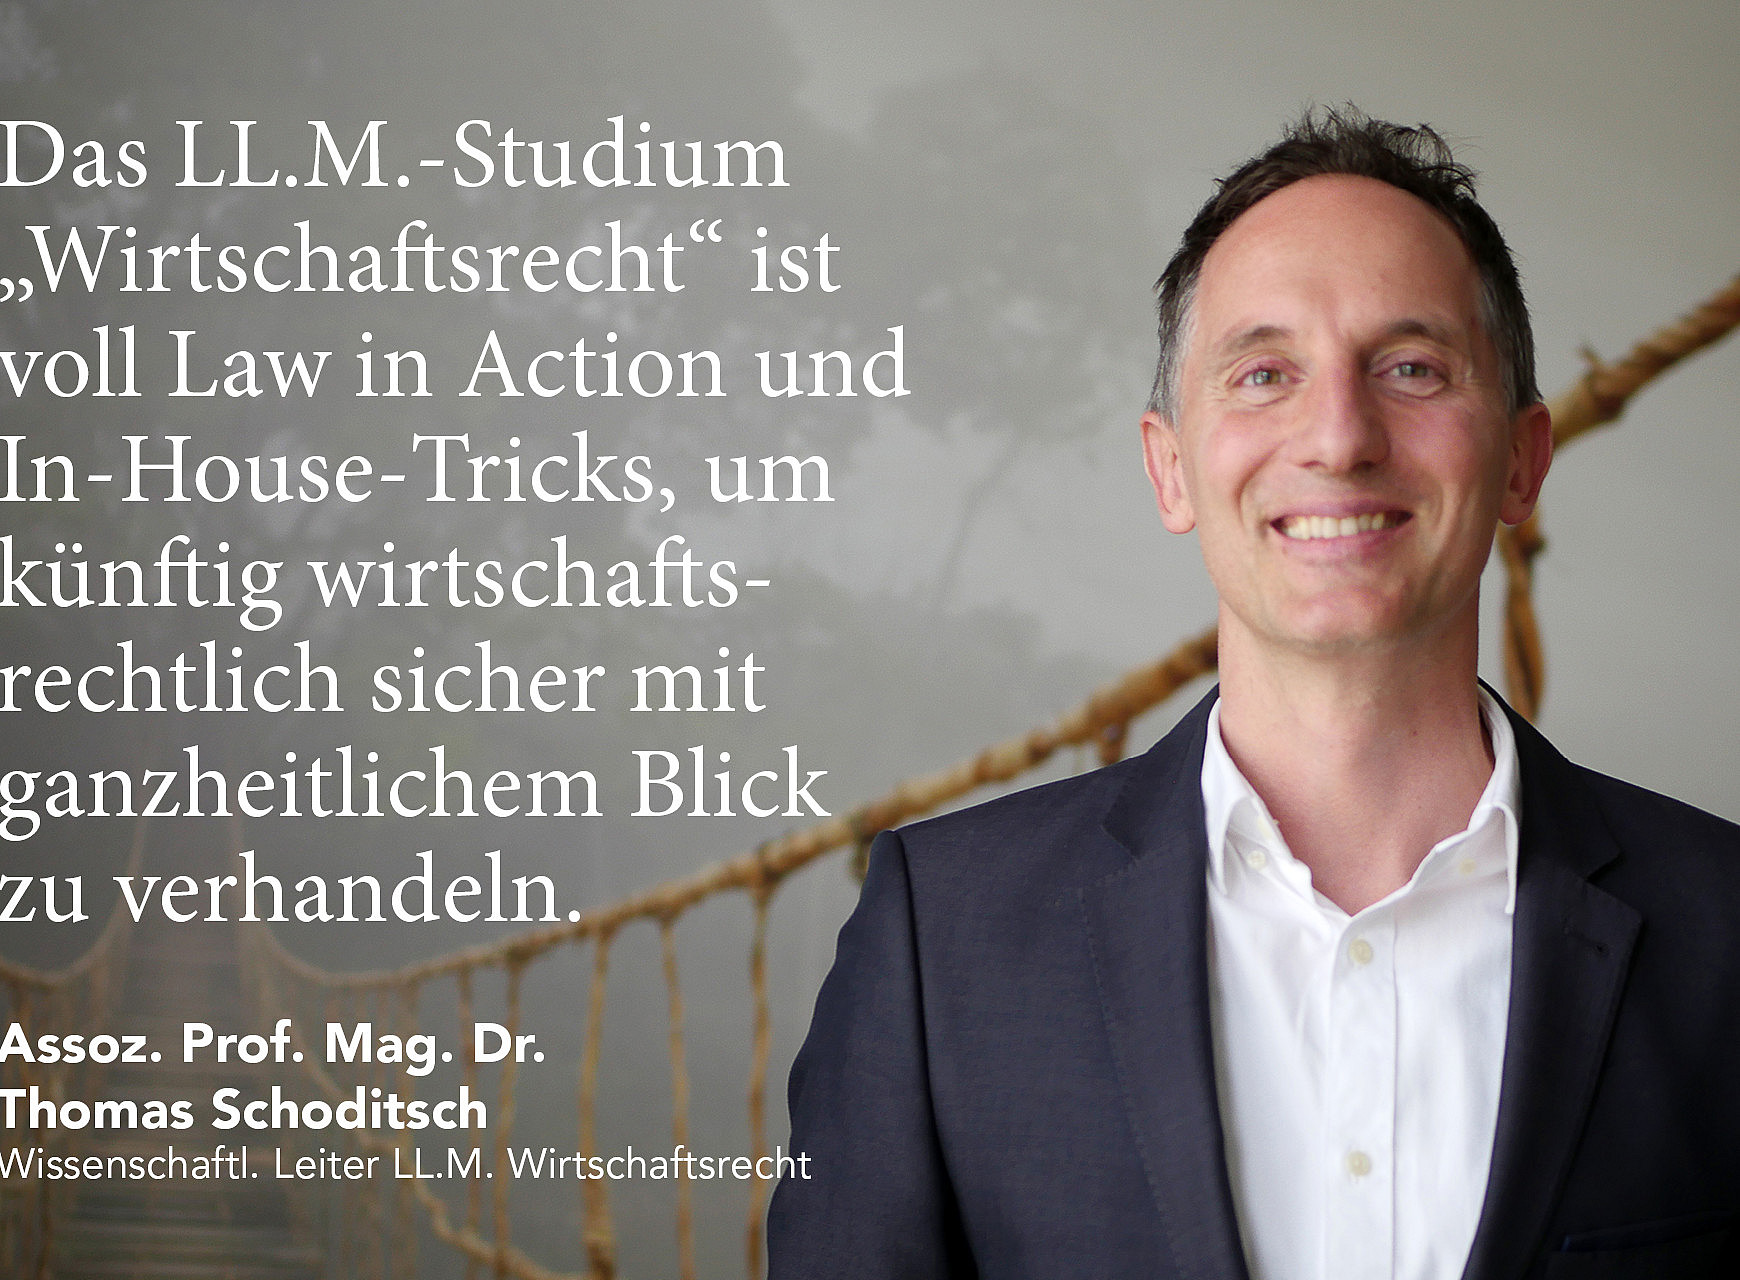 Rechtskoryphäe Assoz. Prof. Mag. Dr. Thomas Schoditsch ist neuer wissenschaftlicher Leiter des Masterlehrgangs "LL.M. Wirtschaftsrecht" an der Universität Graz 